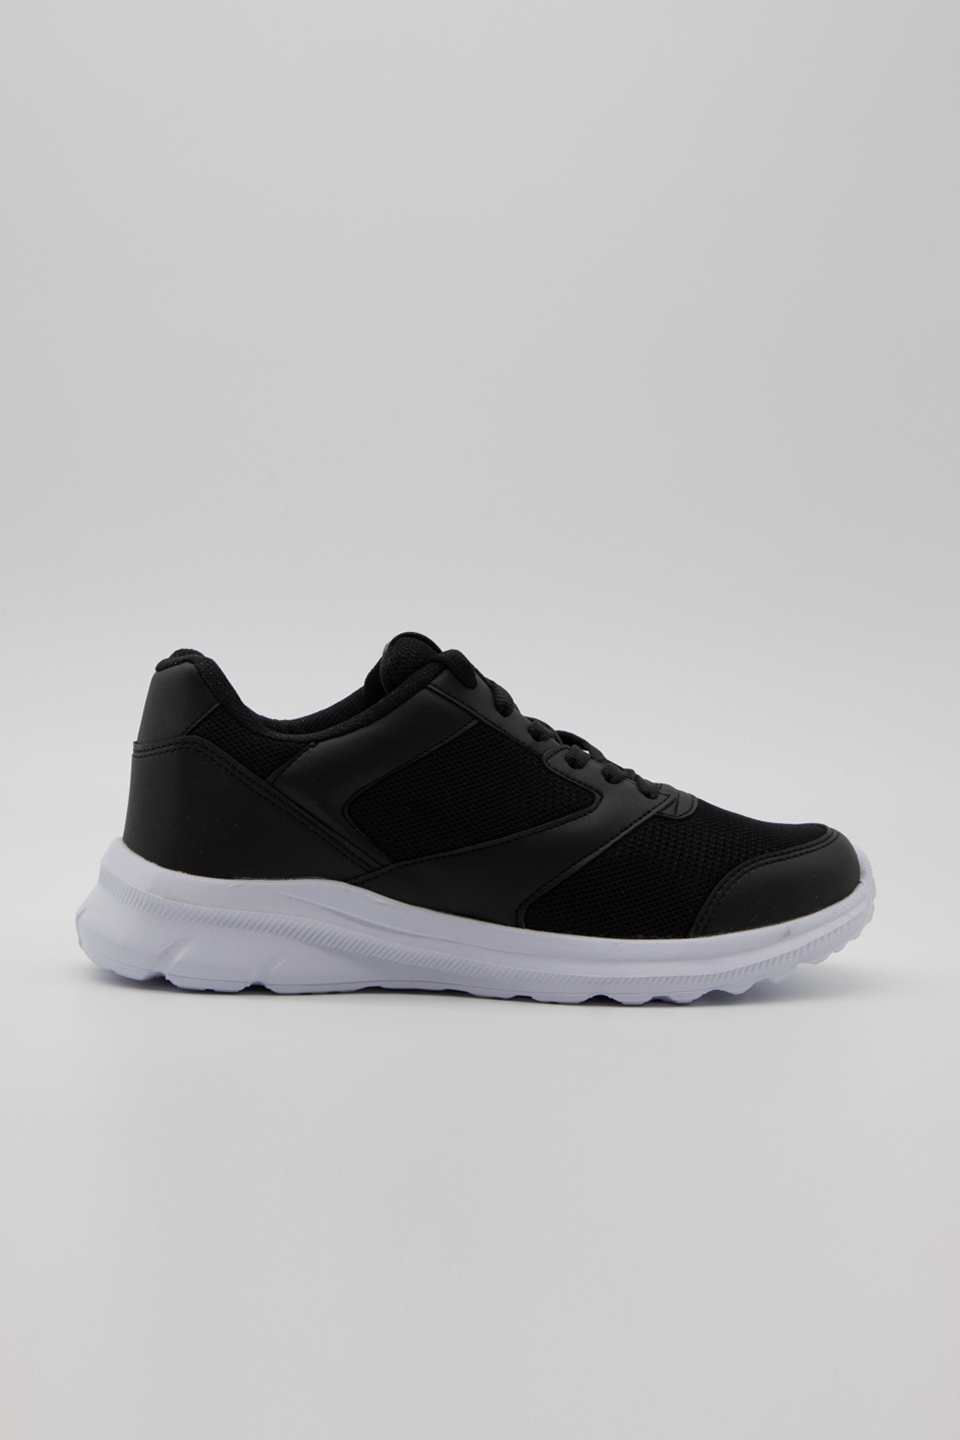 Erkek spor ayakkabı-105 Siyah/Beyaz